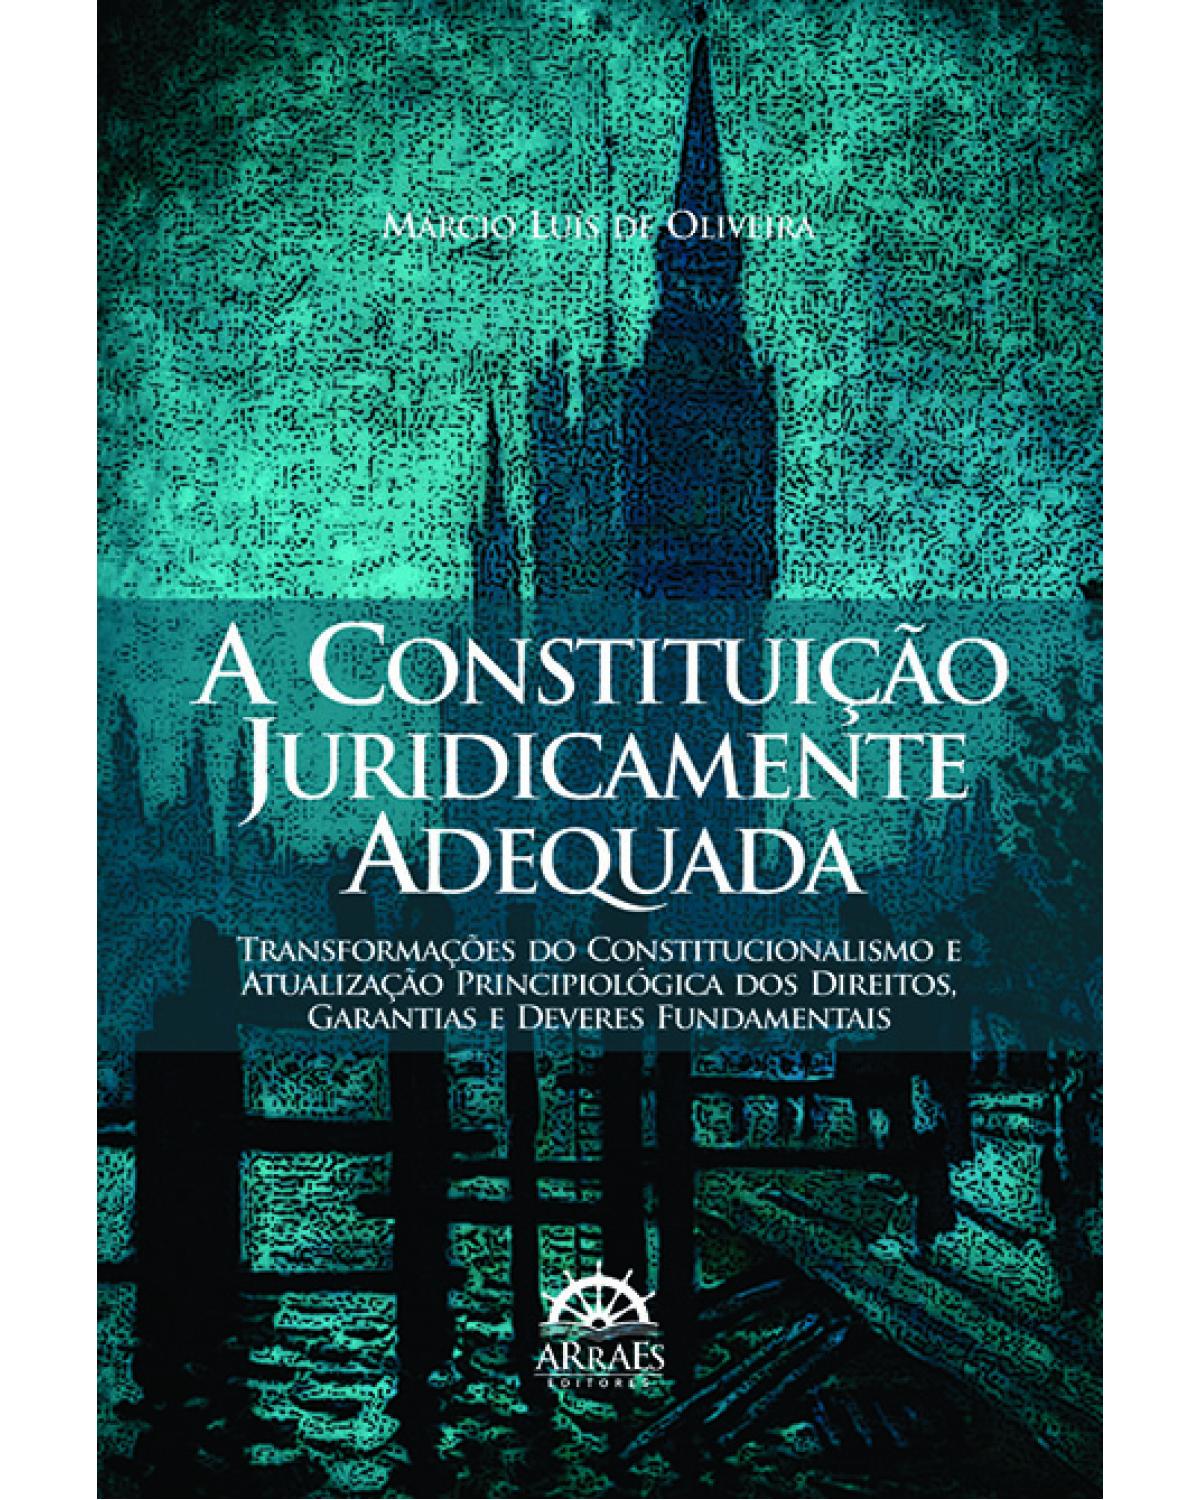 A constituição juridicamente adequada: transformações do constitucionalismo e atualização principiológica dos direitos, garantias e deveres fundamentais - 1ª Edição | 2013